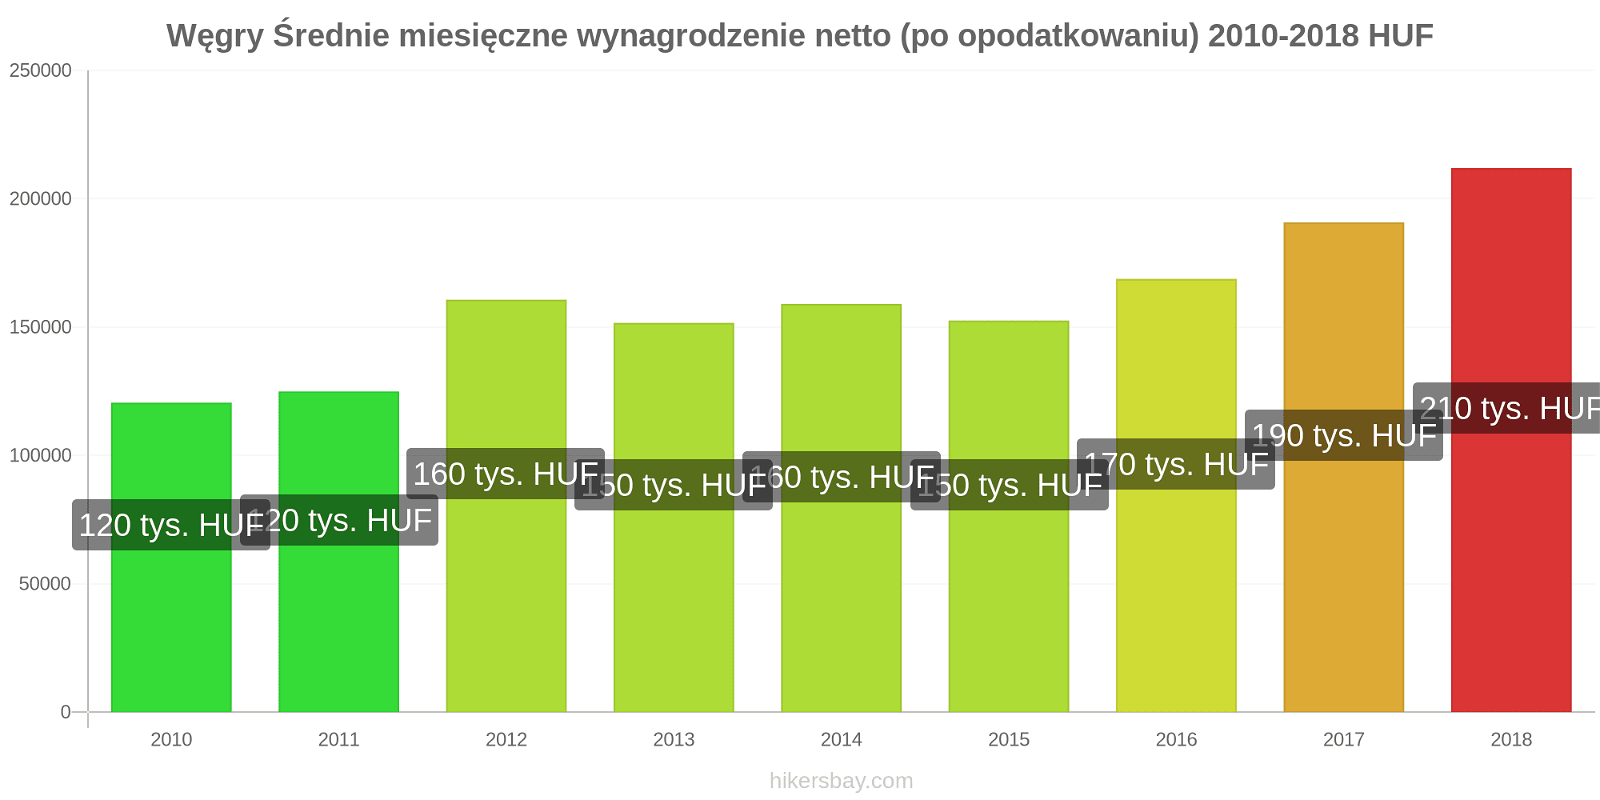 Węgry zmiany cen Średnie miesięczne wynagrodzenie netto (po opodatkowaniu) hikersbay.com